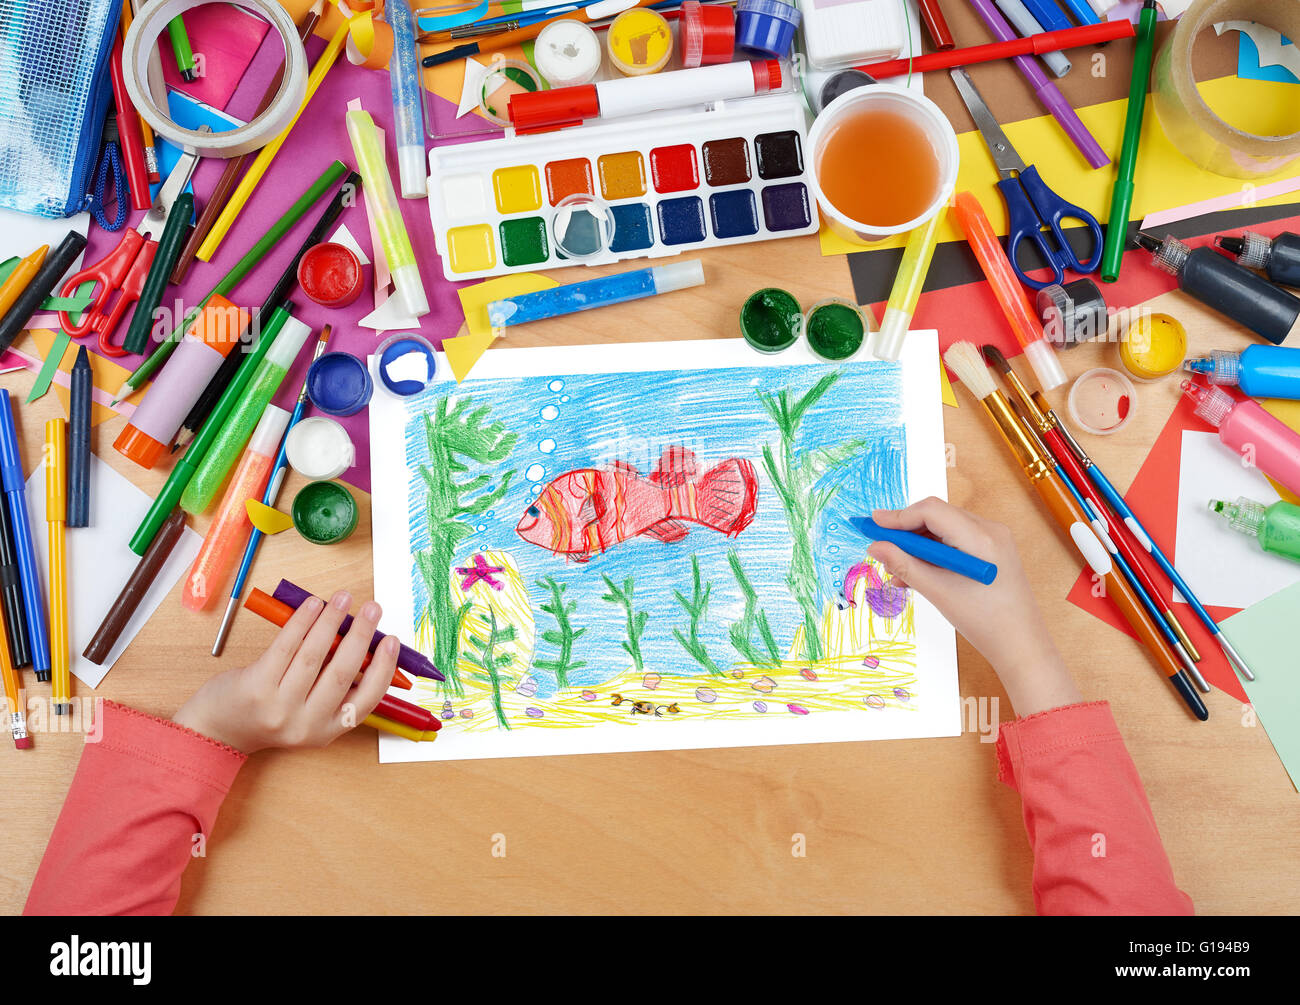 roter Fisch unter Wasser, Krabbe auf Meeresboden, Kind zeichnen, Draufsicht Hände mit Bleistift Gemälde Bild auf Papier, Kunstwerk am Arbeitsplatz Stockfoto